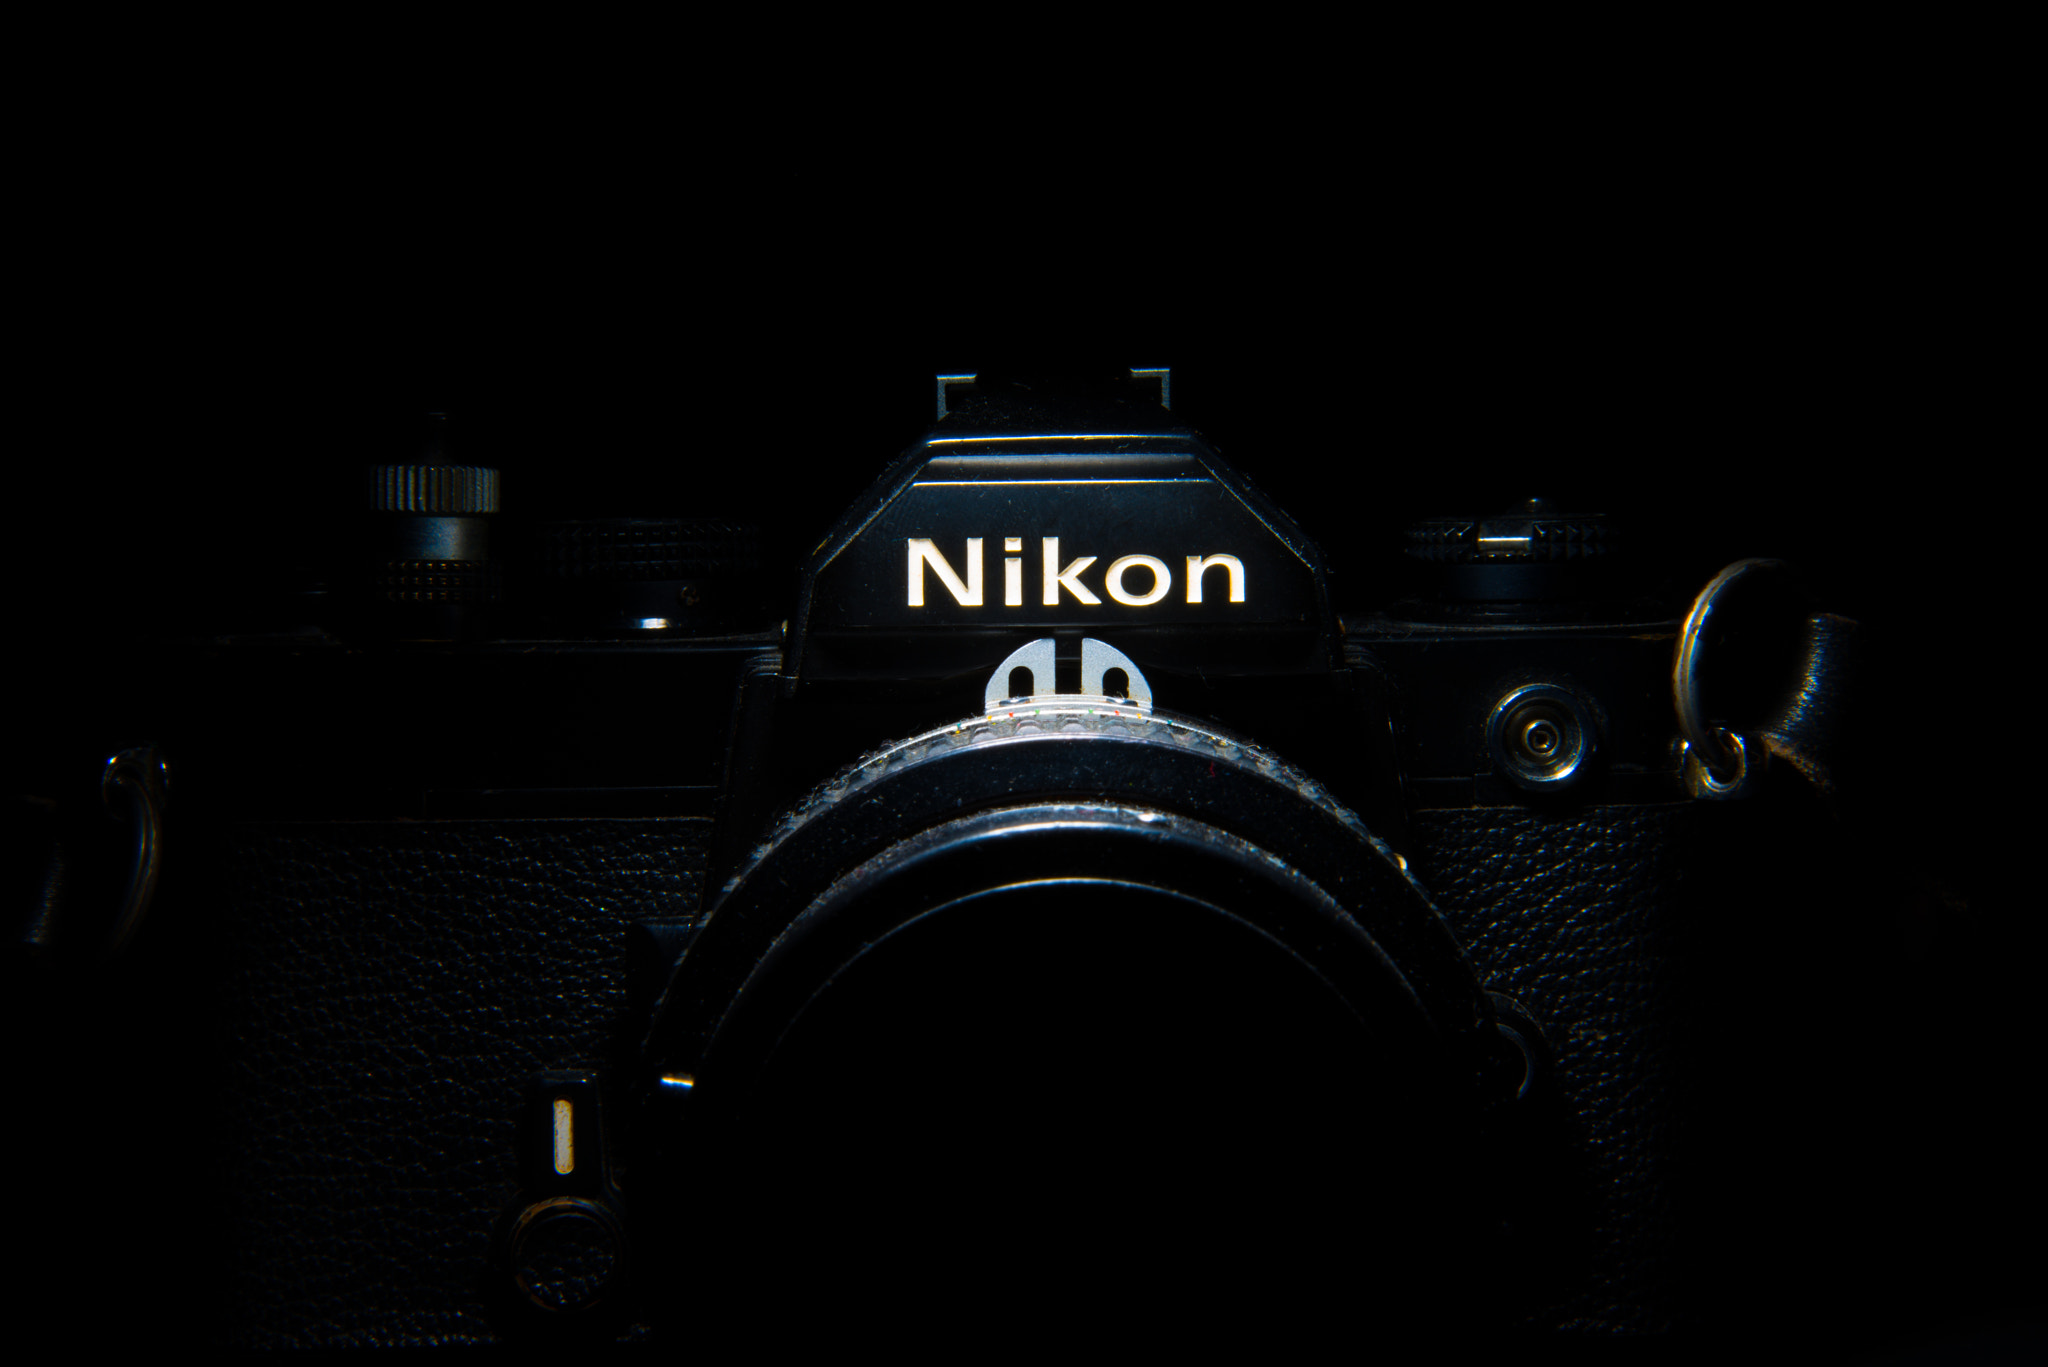 Nikon D800E + Nikon AF-S Nikkor 24-85mm F3.5-4.5G ED VR sample photo. Camera photography